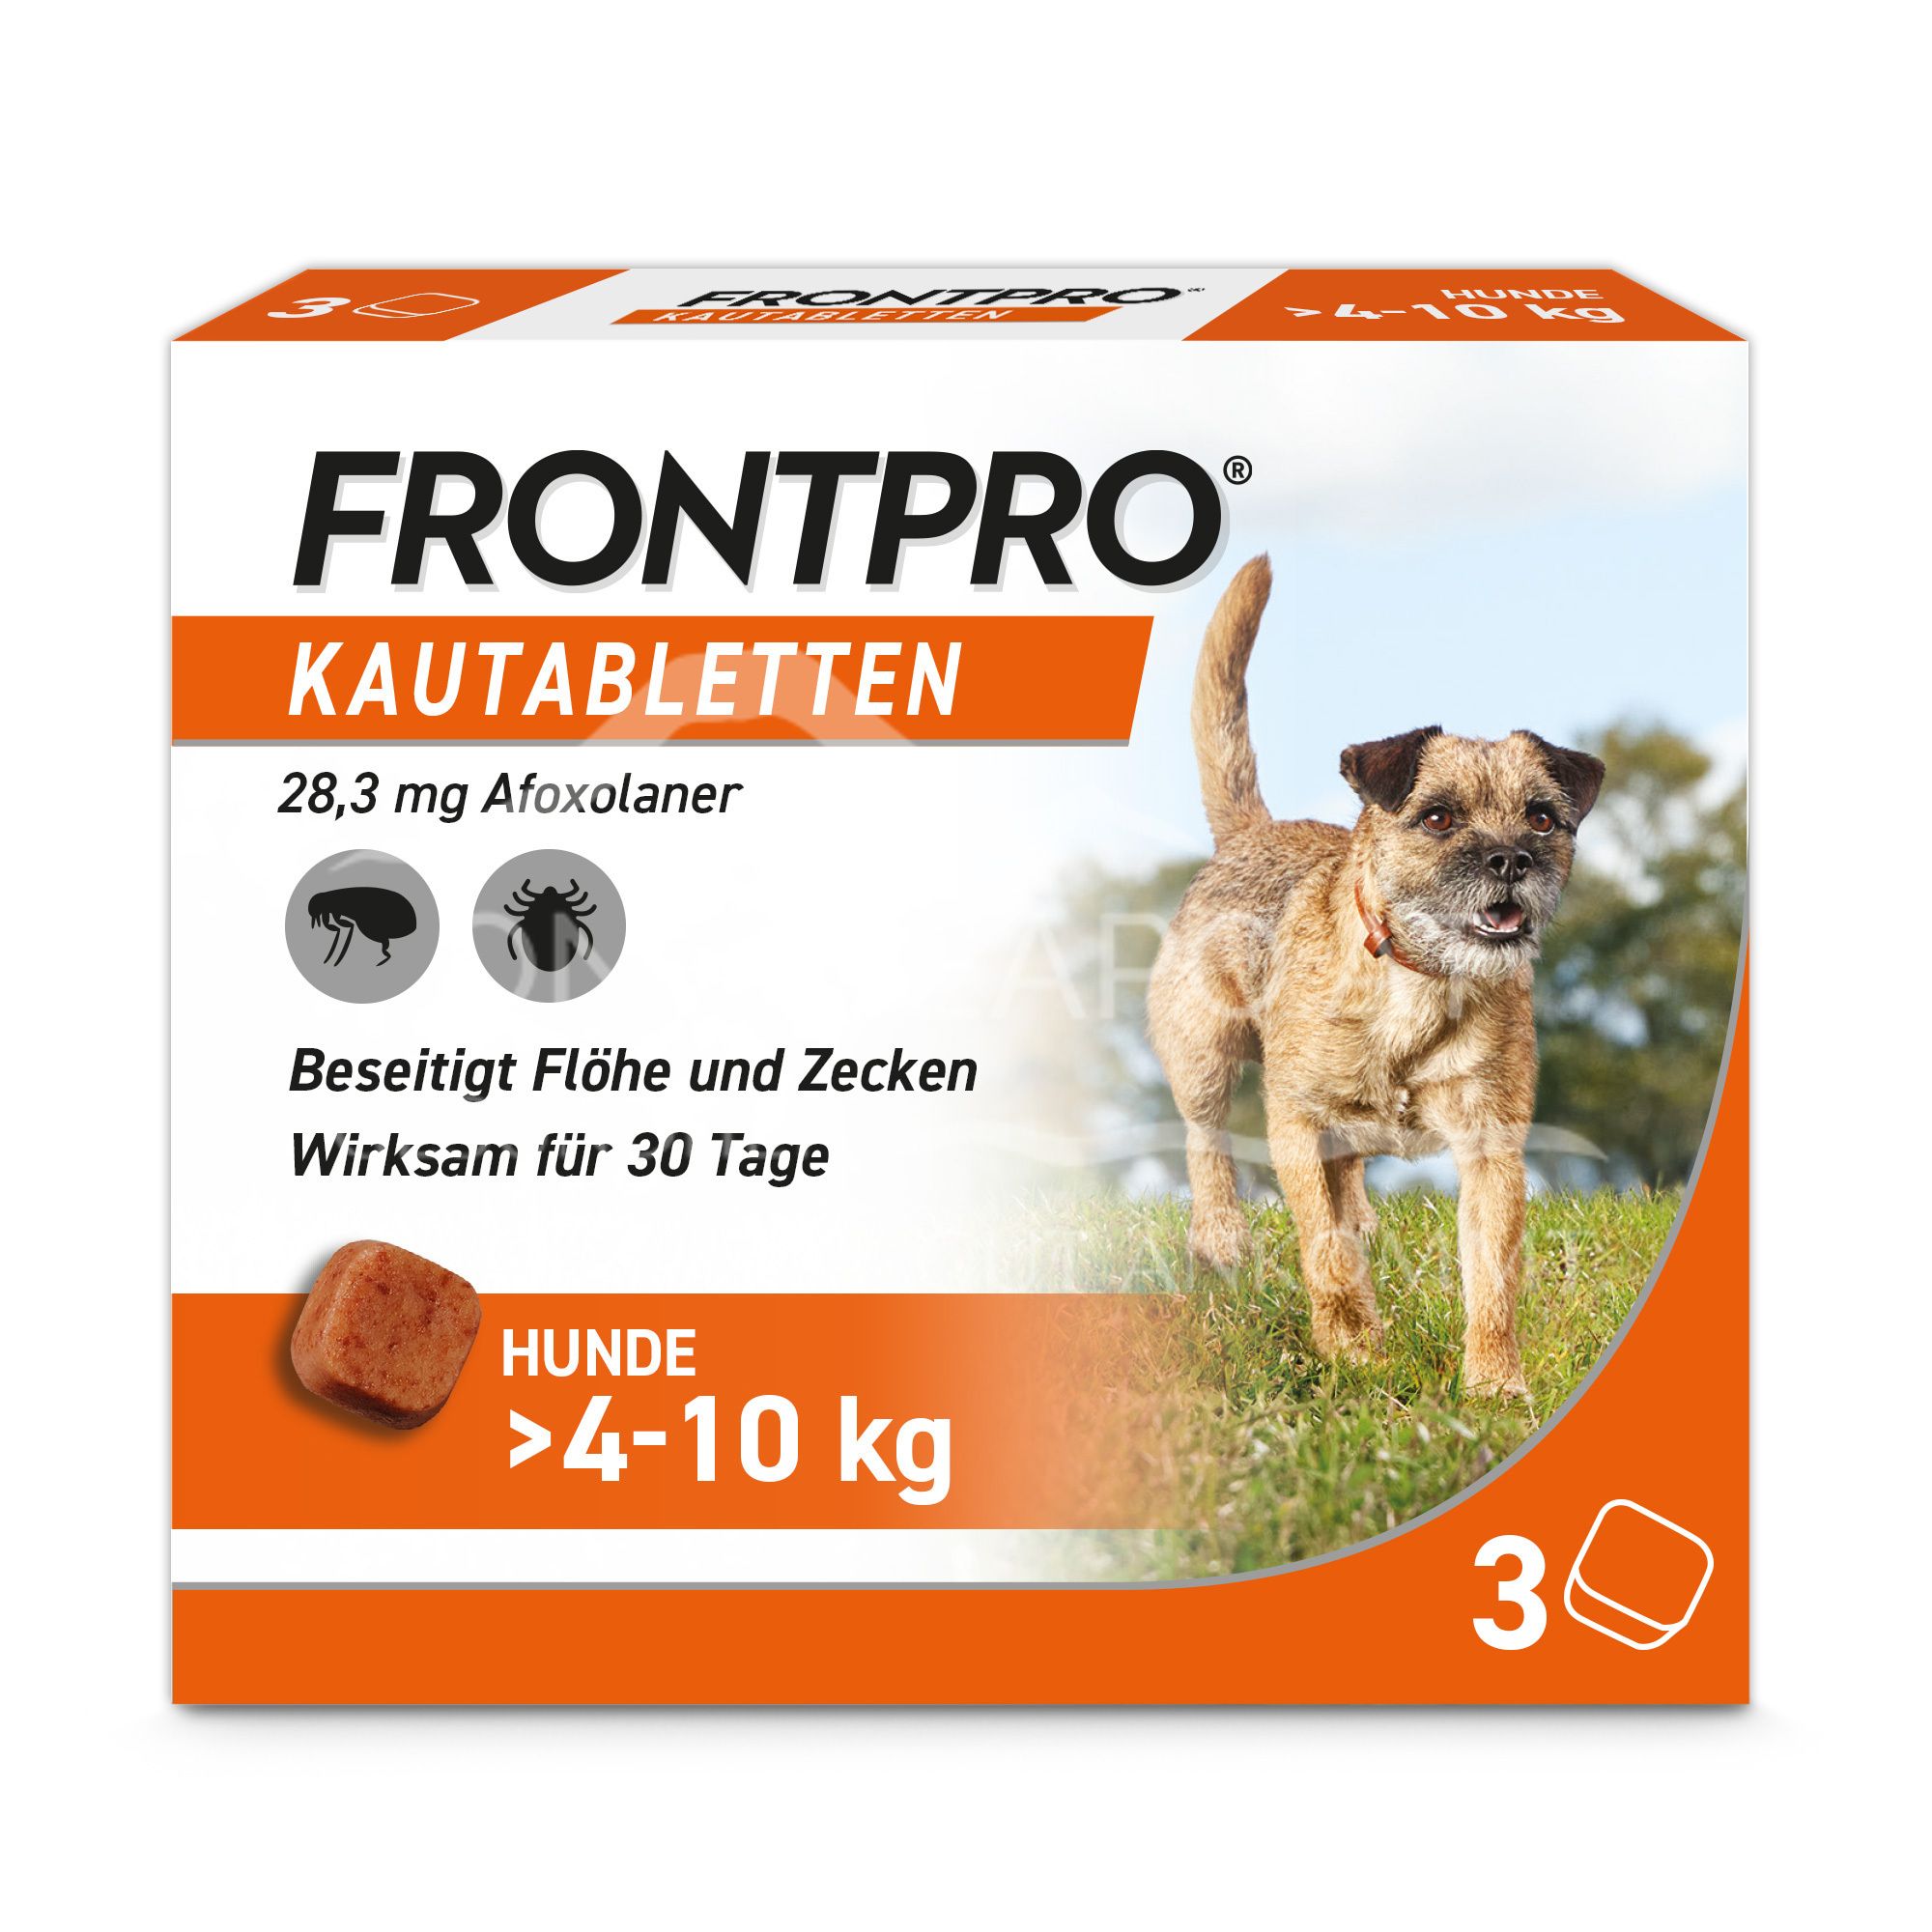 FRONTPRO® 28 mg Kautabletten für Hunde > 4 - 10 kg